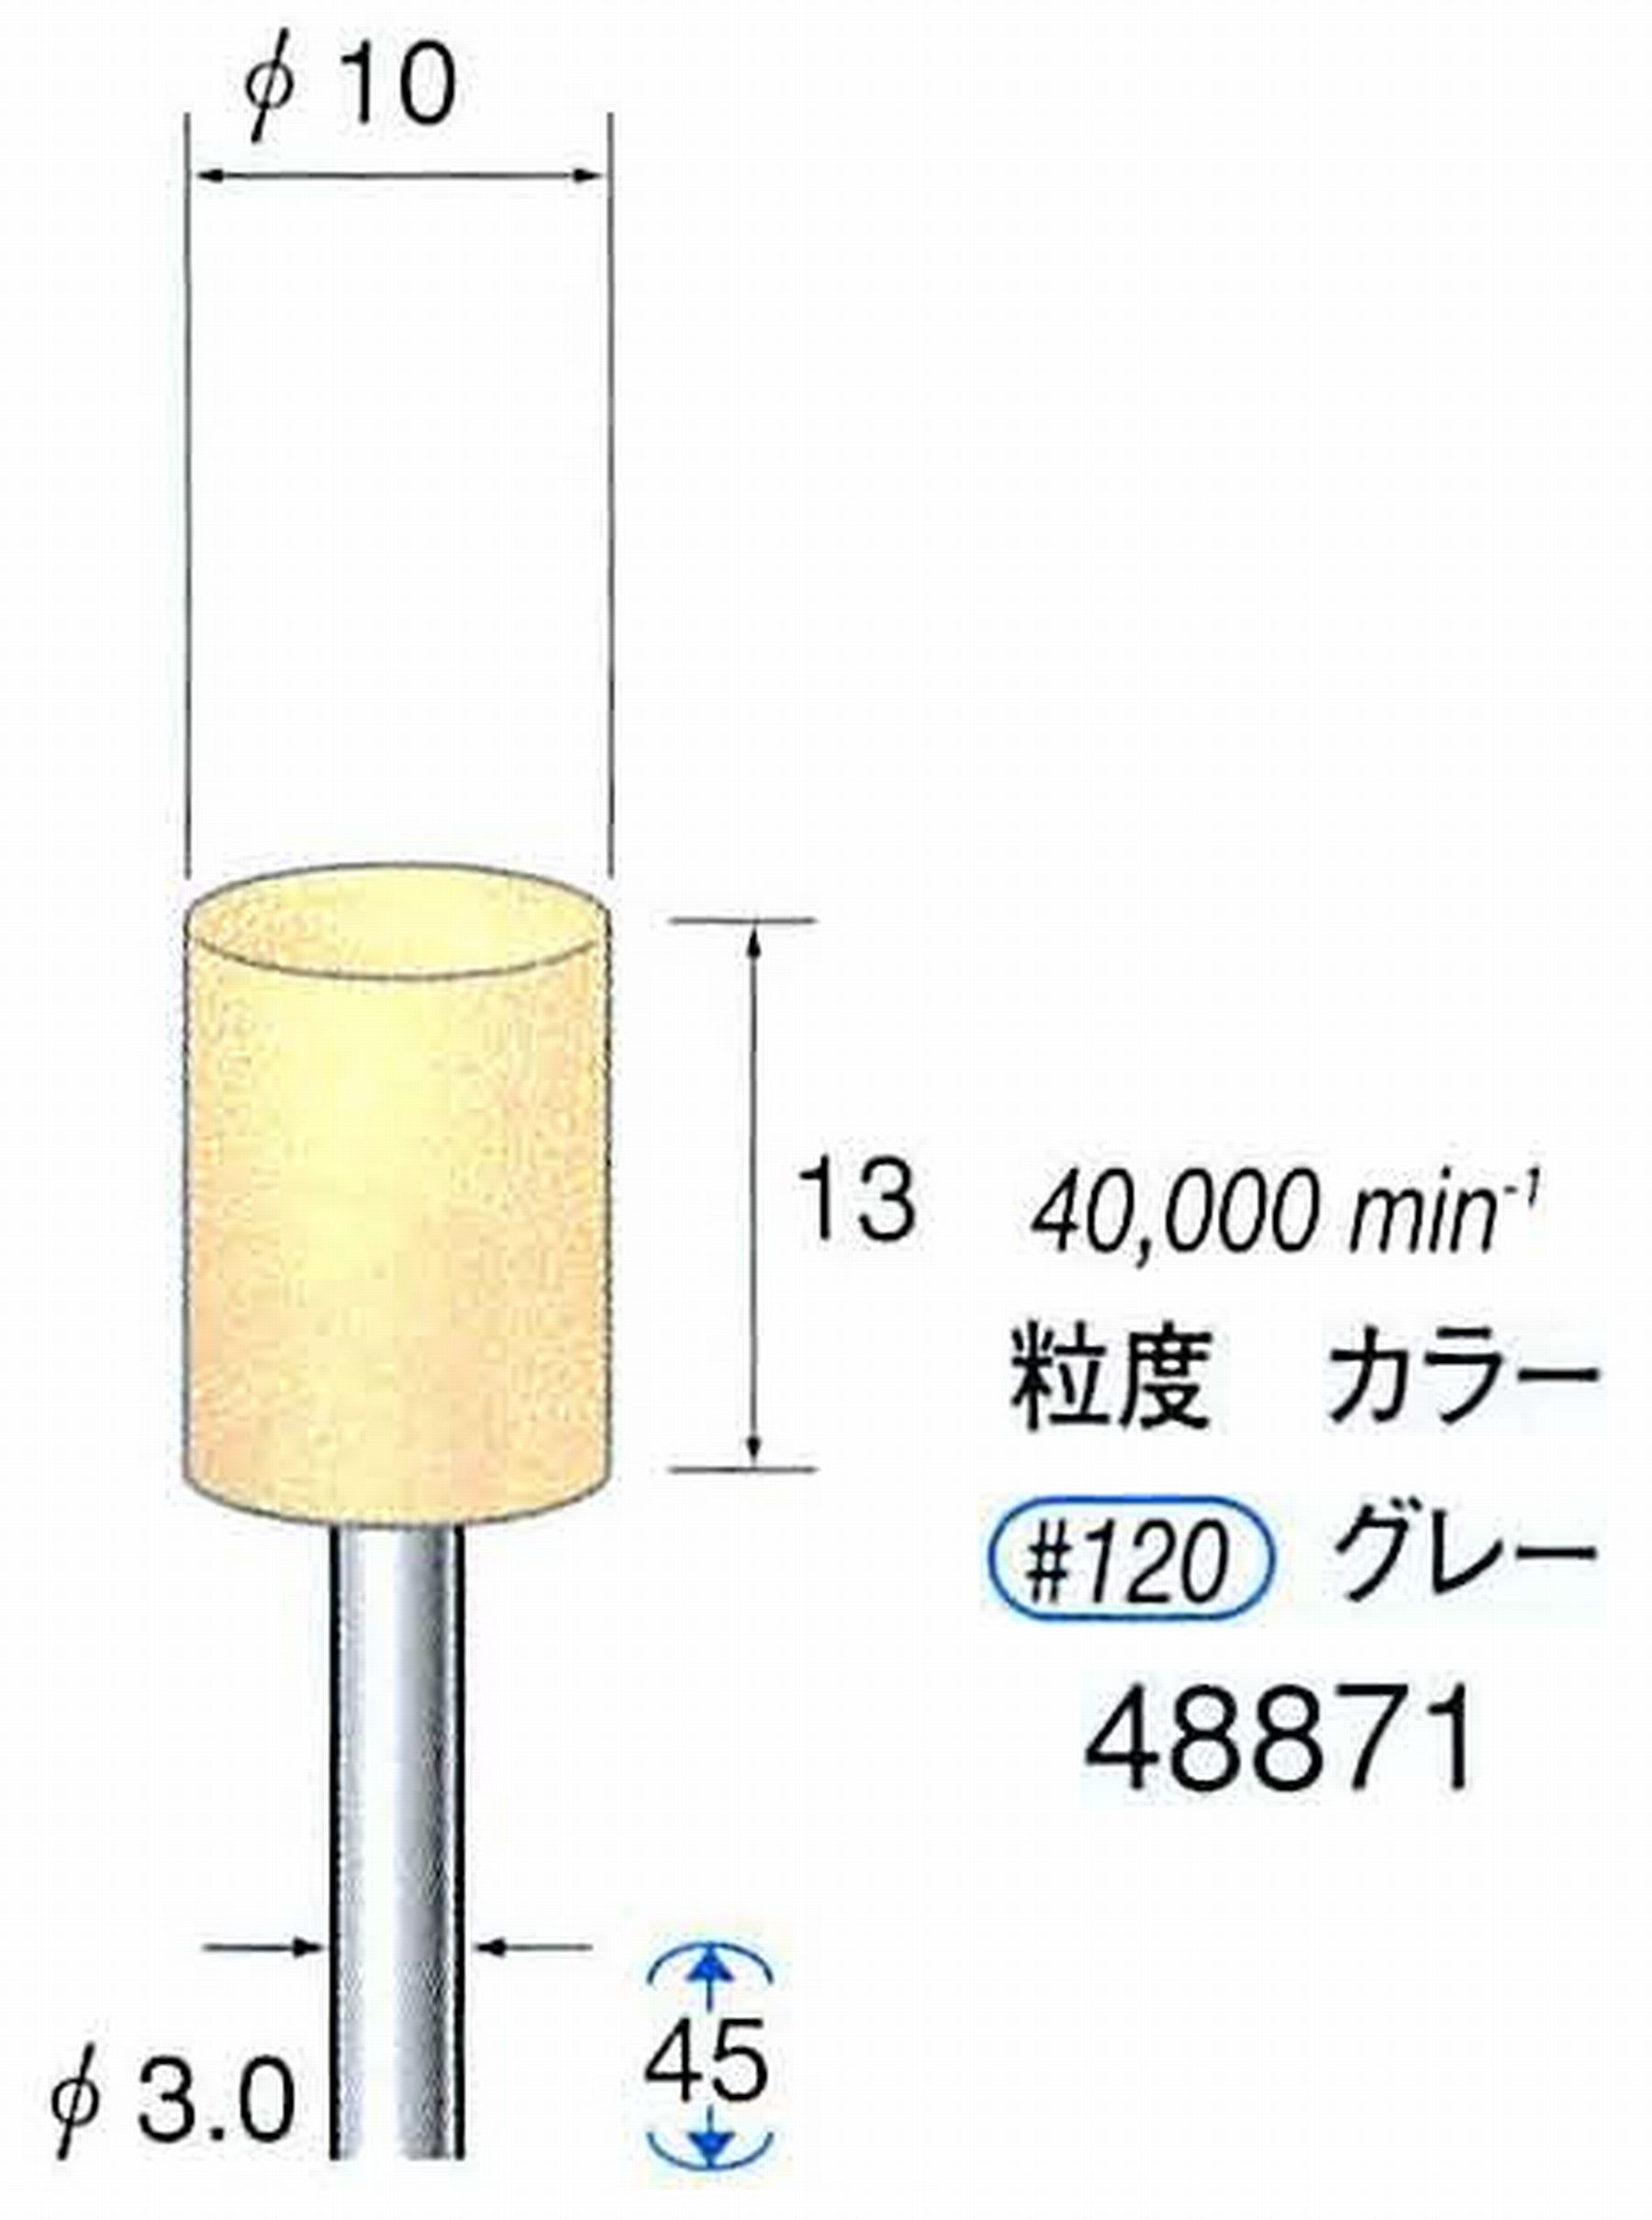 ナカニシ/NAKANISHI ポリッシュサンダー 軸径(シャンク)φ3.0mm 48871